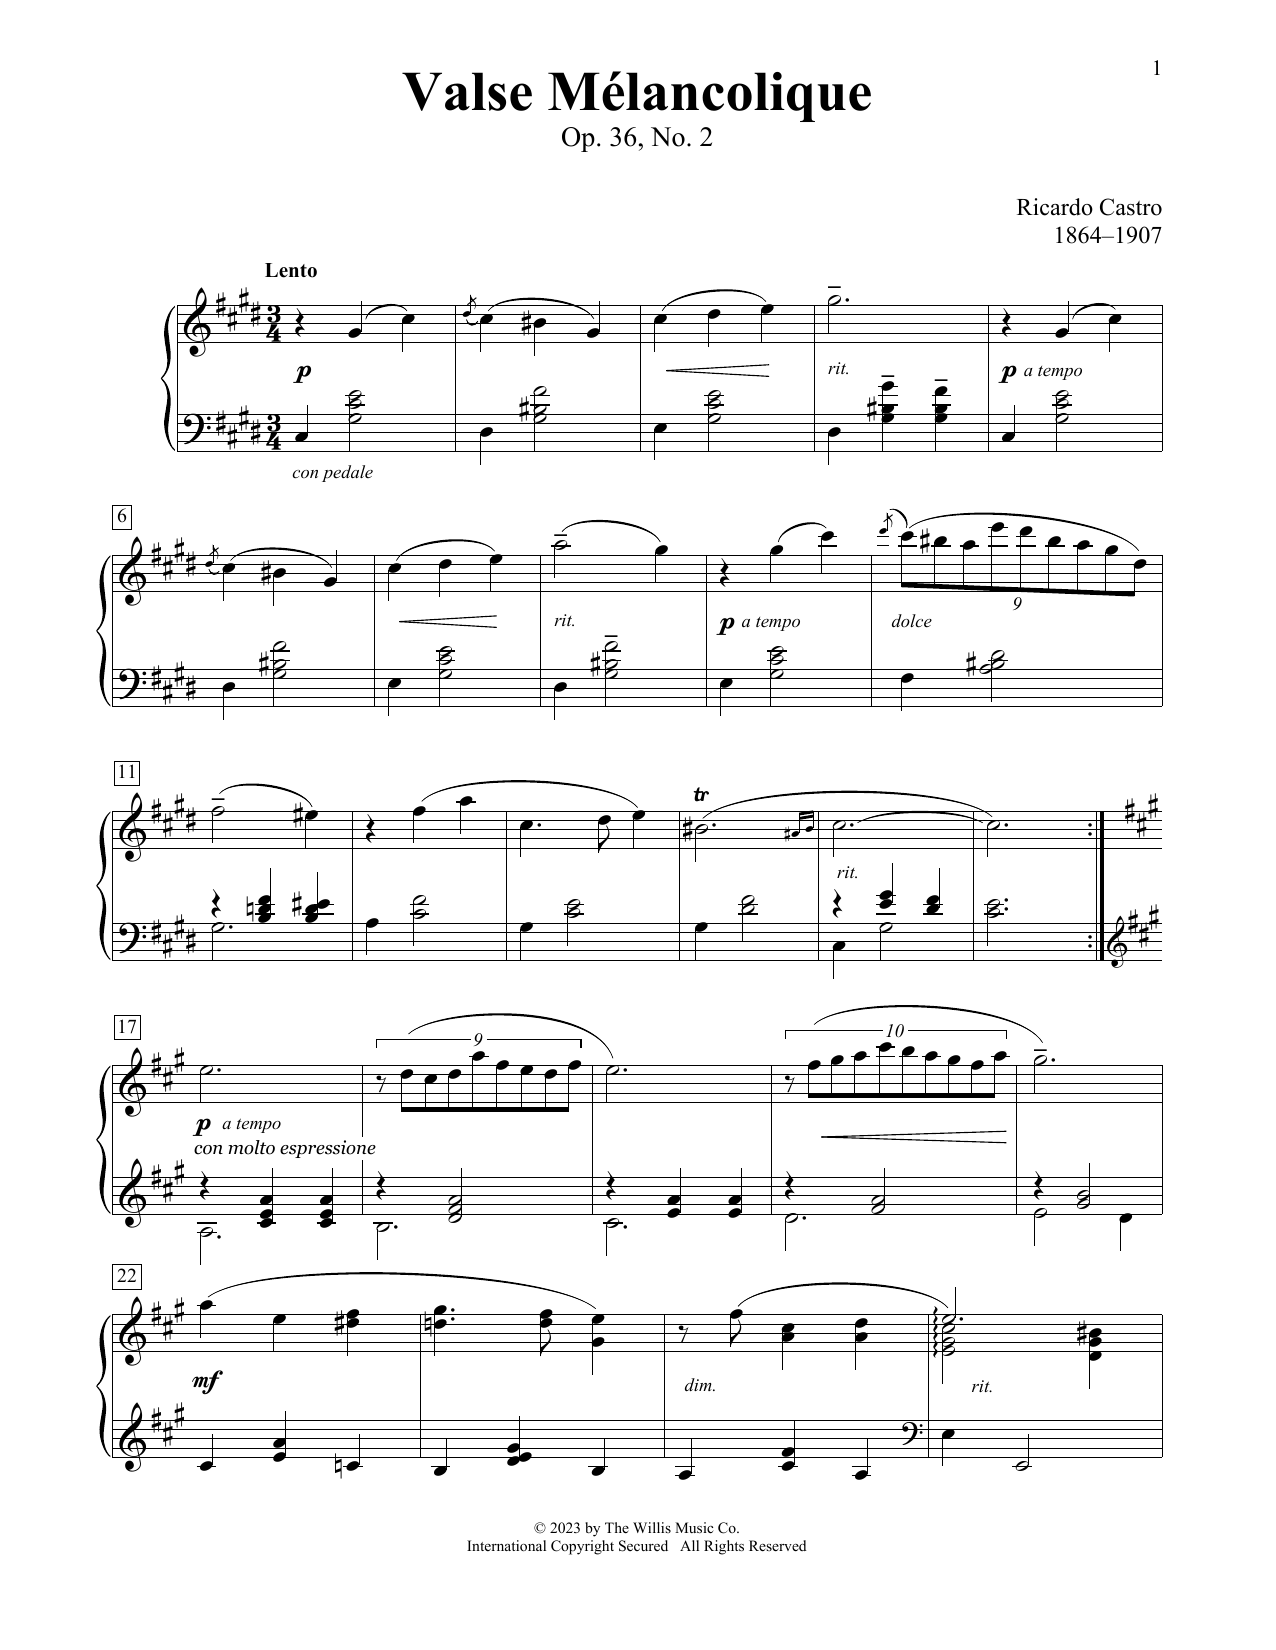 Ricardo Castro Valse Melancolique, Op. 36, No.2 sheet music notes and chords arranged for Educational Piano